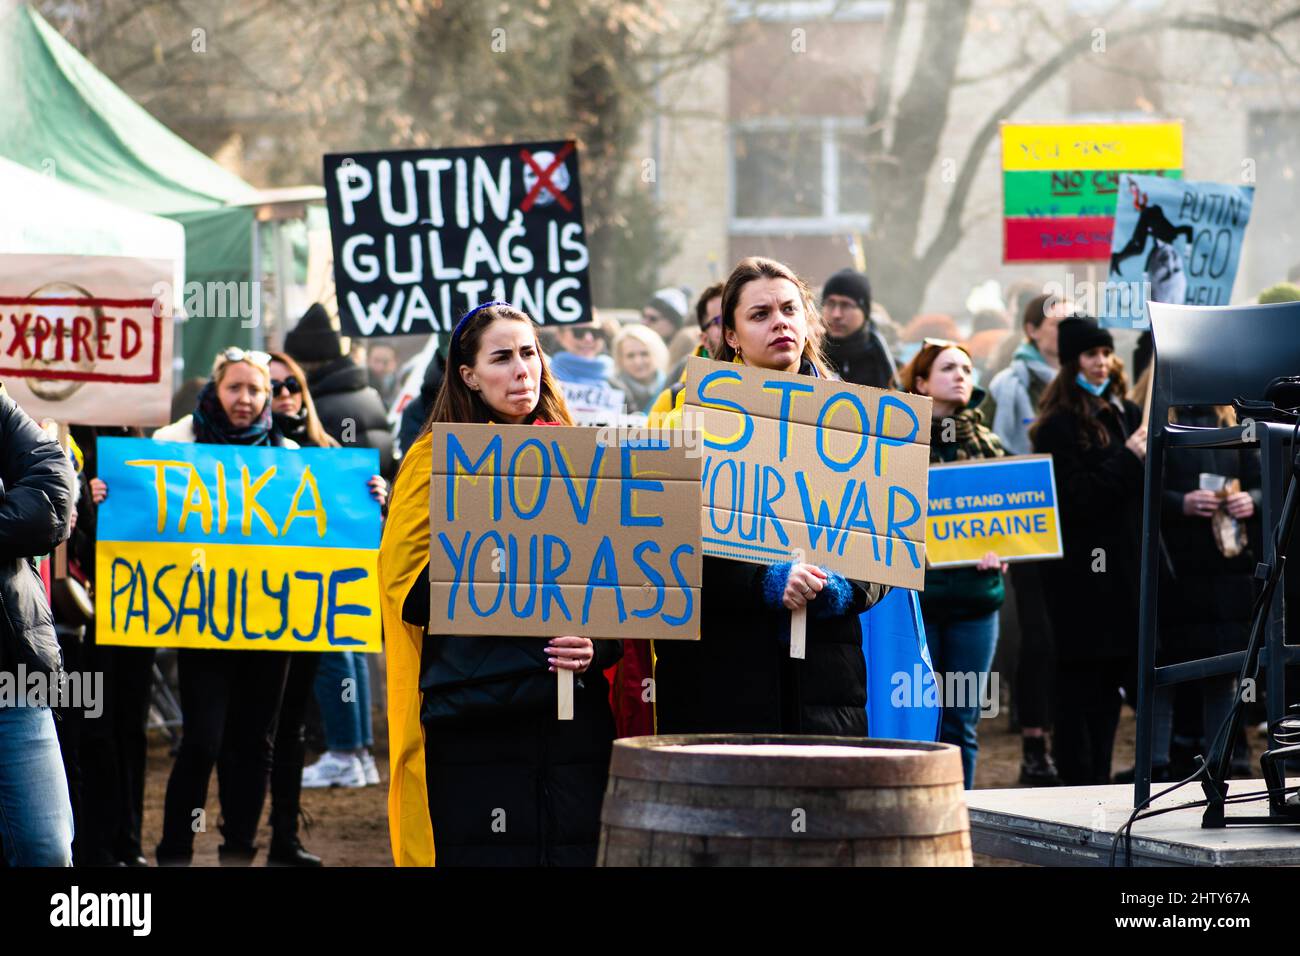 Belle ragazze durante una manifestazione pacifica contro la guerra, Putin e la Russia a sostegno dell’Ucraina, con persone, cartelli e bandiere. Stop War Foto Stock